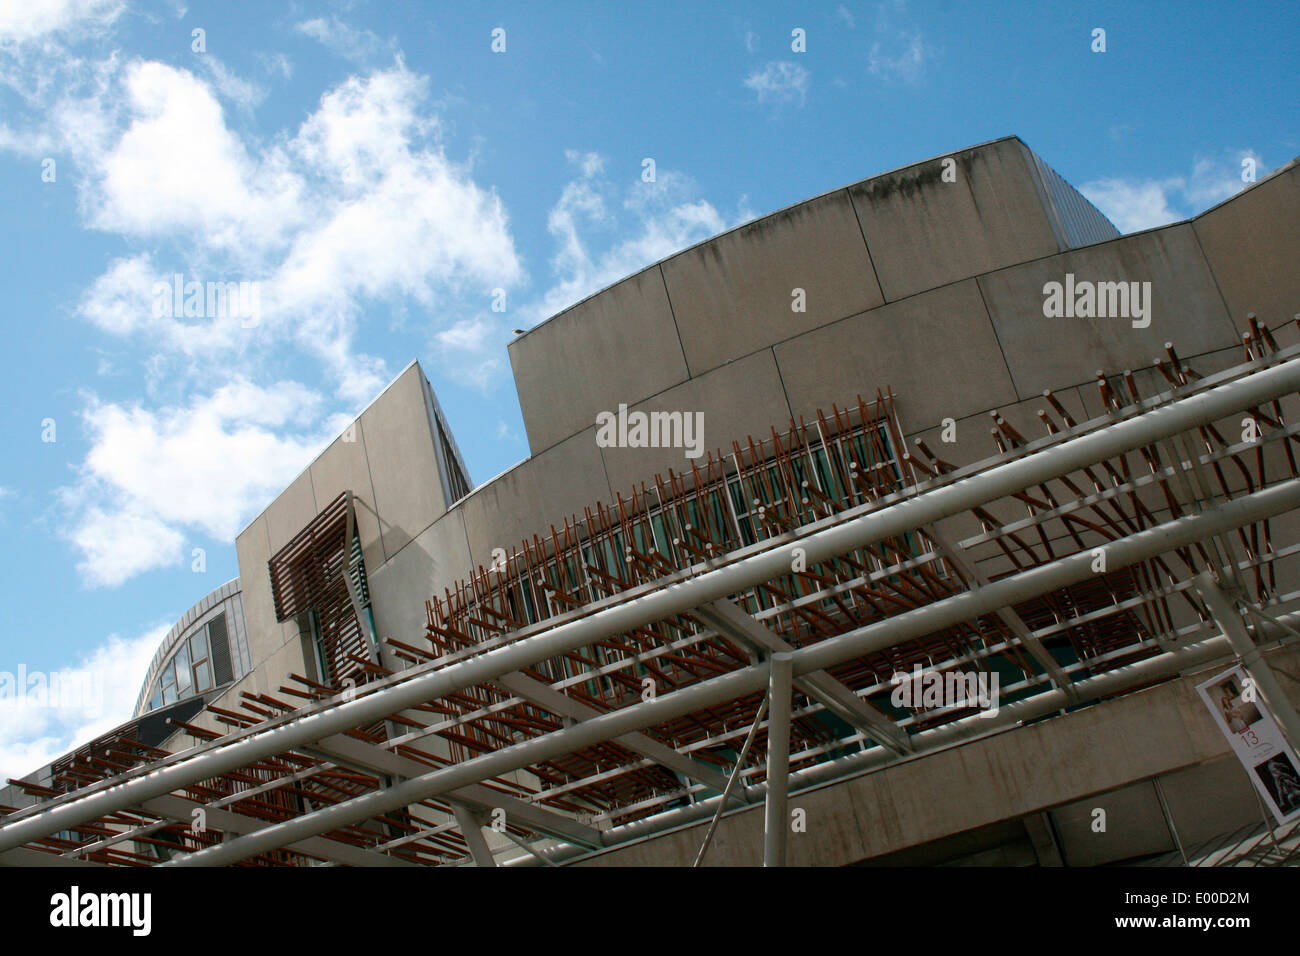 Edificio del Parlamento scozzese da Enric Miralles. Immagine da Kim Craig. Foto Stock